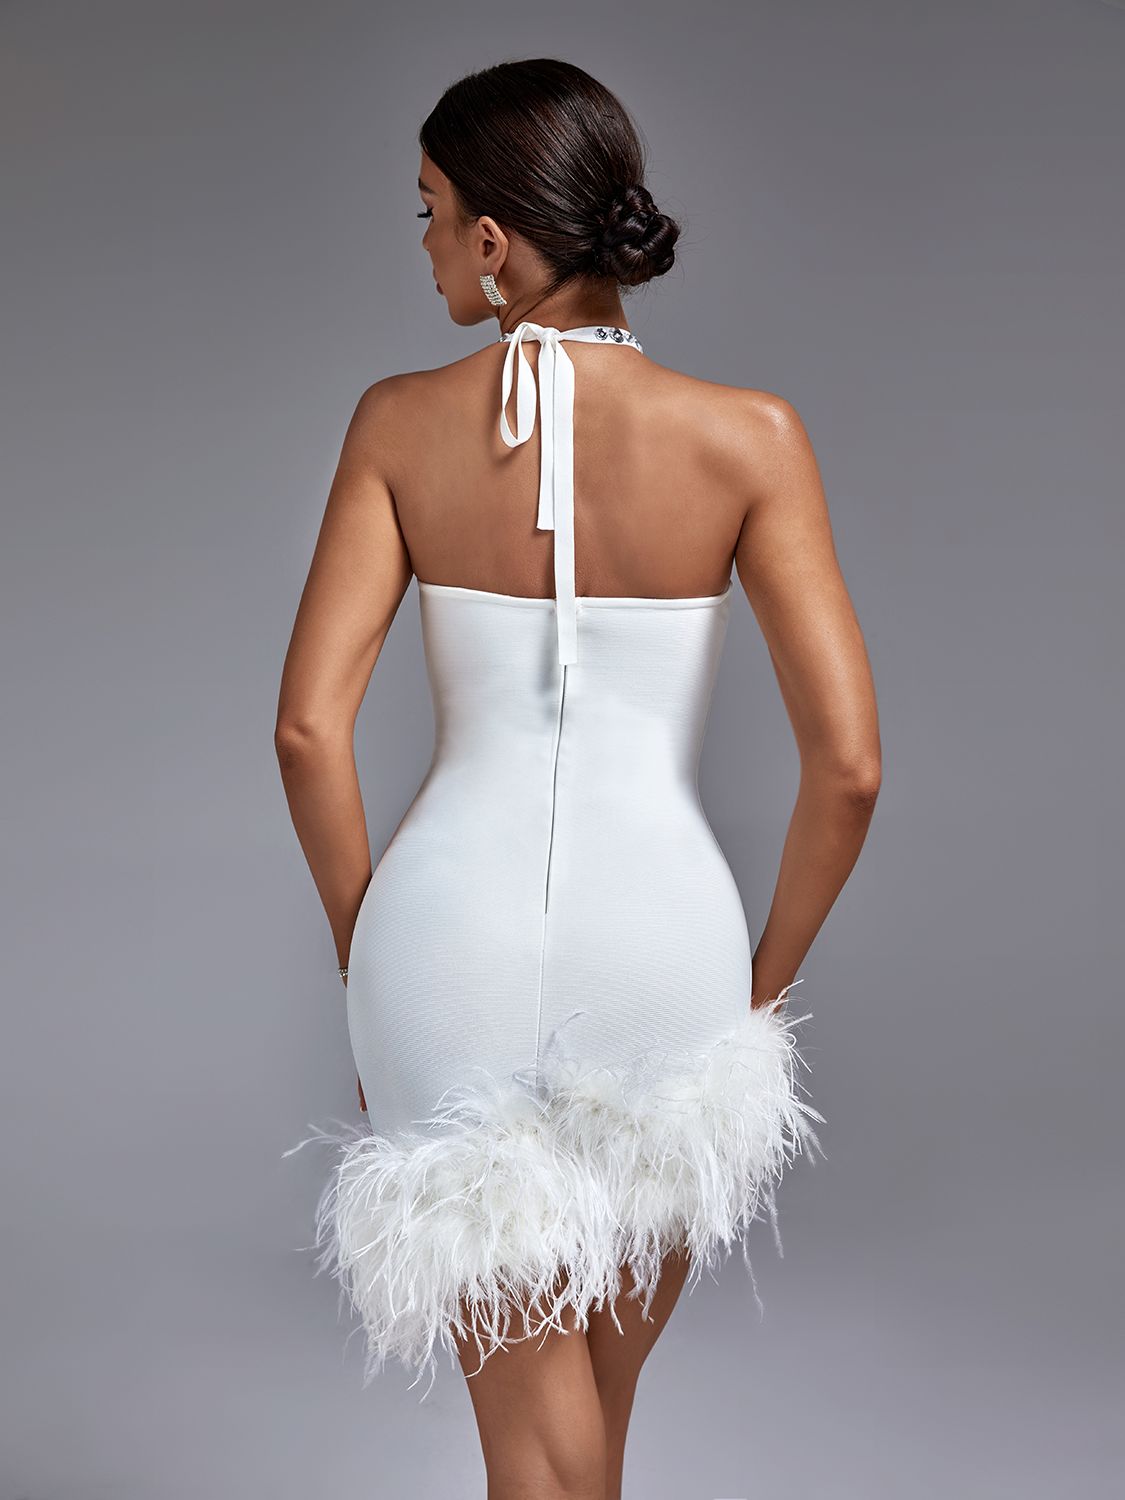 Leilani Bandage Cut Out Halter Rhinestone Dress with Feathers - SunsetFashionLA